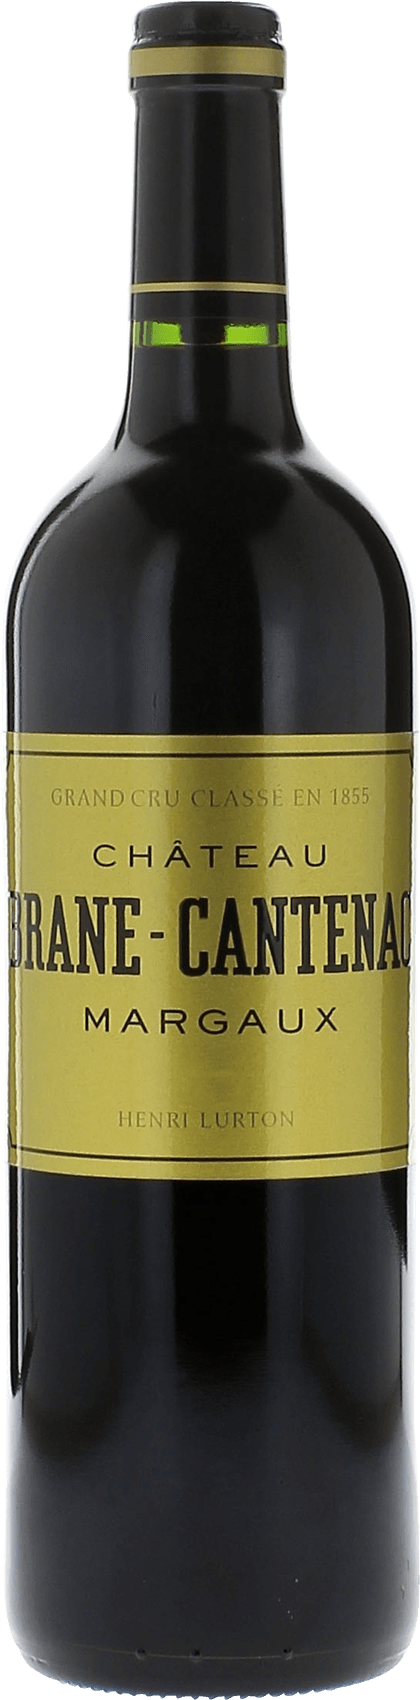 Brane cantenac 2006 2me Grand cru class Margaux, Bordeaux rouge